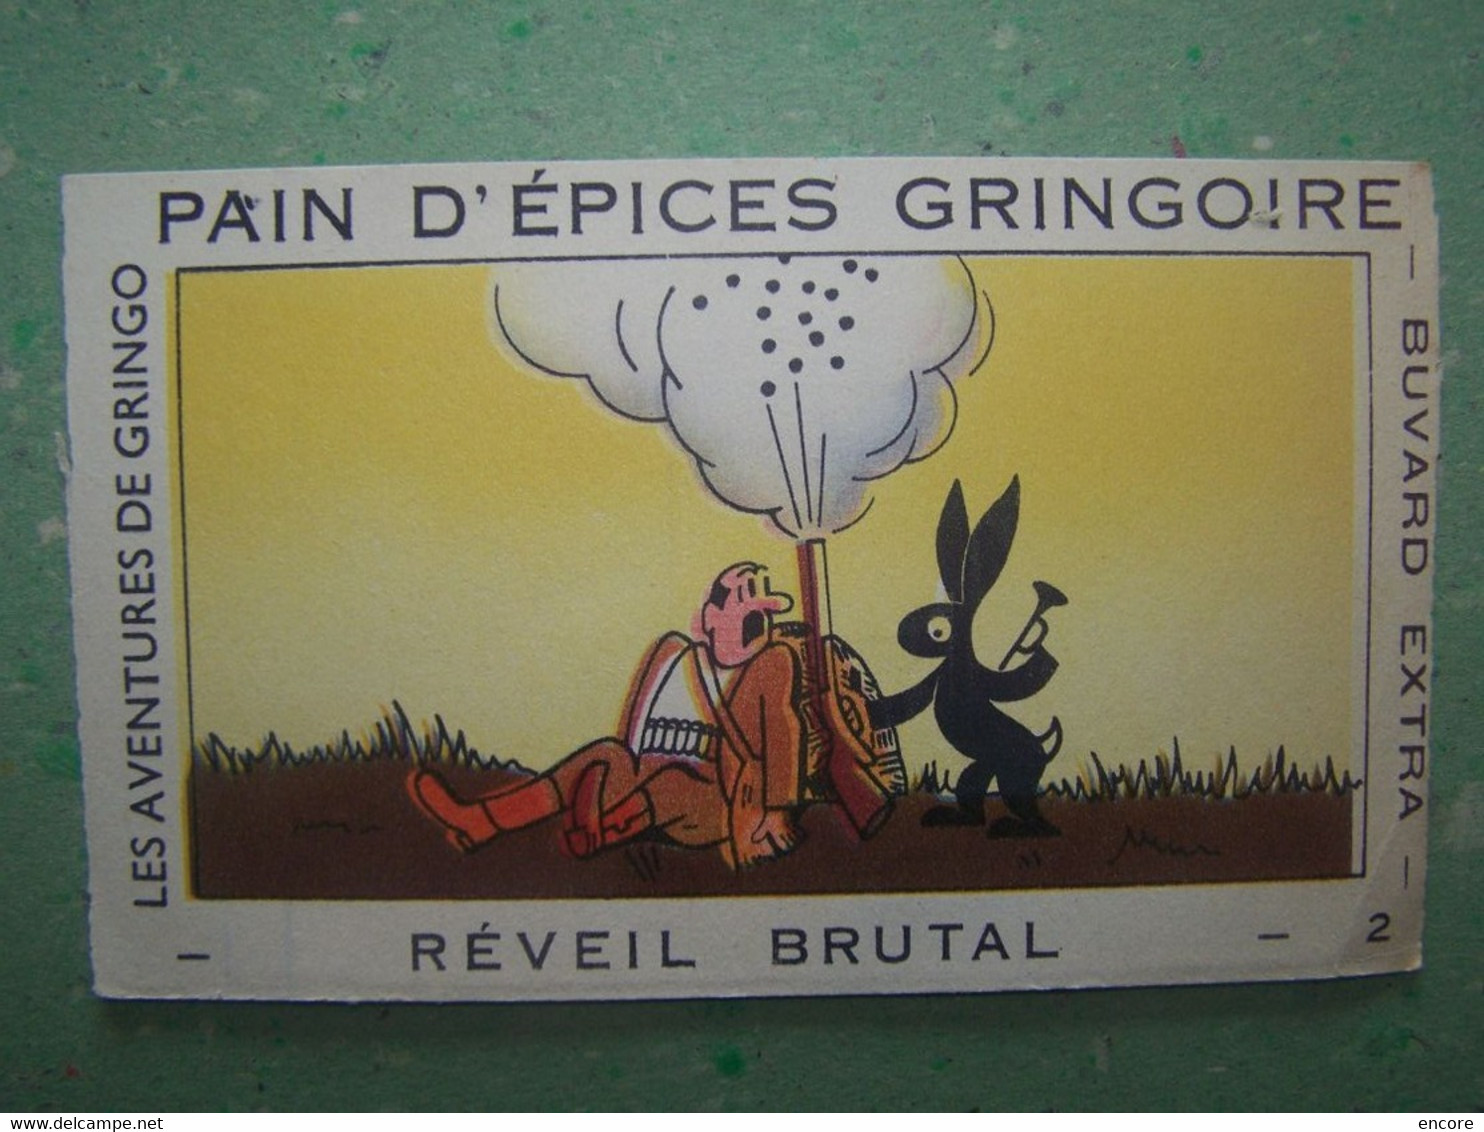 BUVARD. PUBLICITE "PAIN D'EPICES GRINGOIRE". LA CHASSE. REVEIL BRUTAL. 100_7026TRC"a" - Pan De Especias